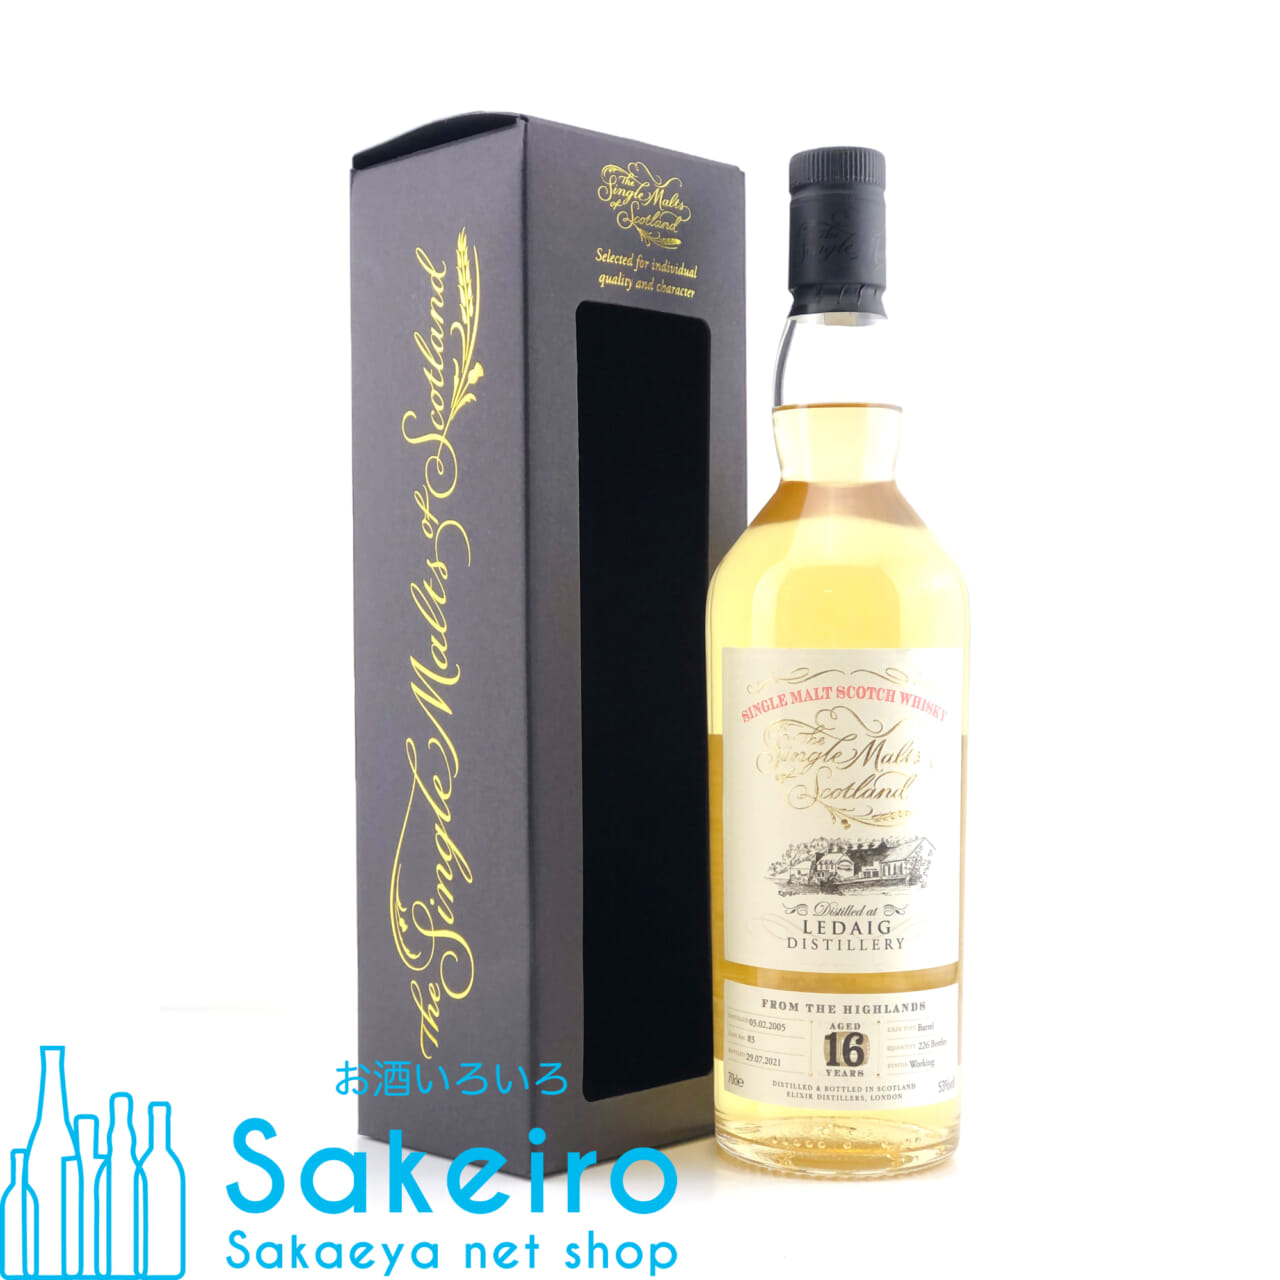 ザ シングルモルツ オブ スコットランド レダイグ 2005 16年 バーボンバレル 53％ 700ml - お酒いろいろ Sakeiro  -Sakaeya net shop-